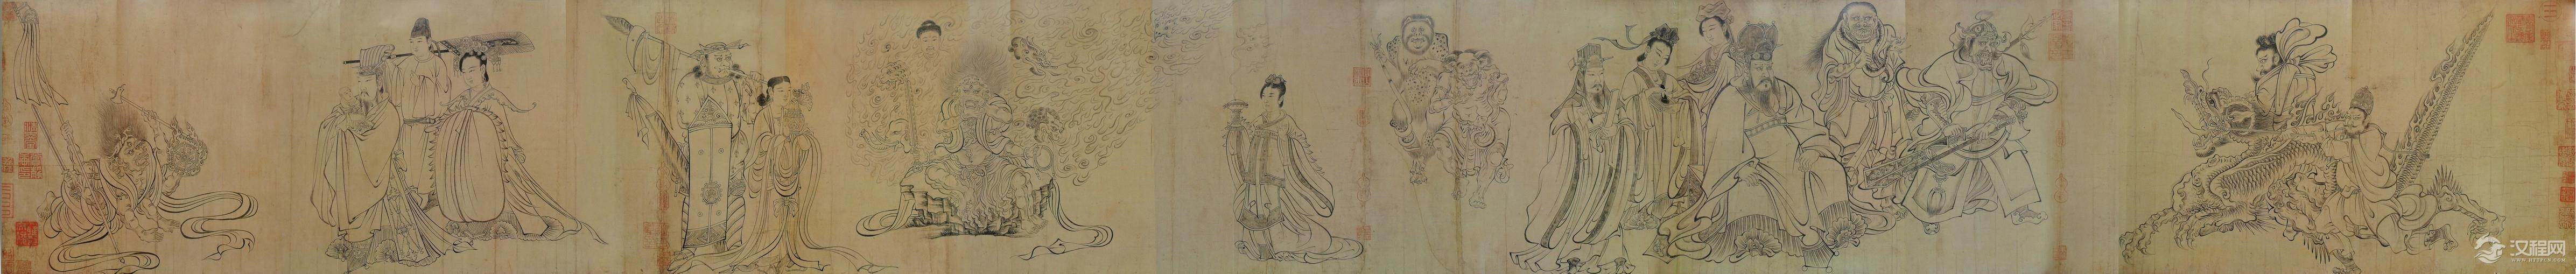 吴道子《八十七神仙图》与武宗元《朝元先仗图》（百幅中国名画）